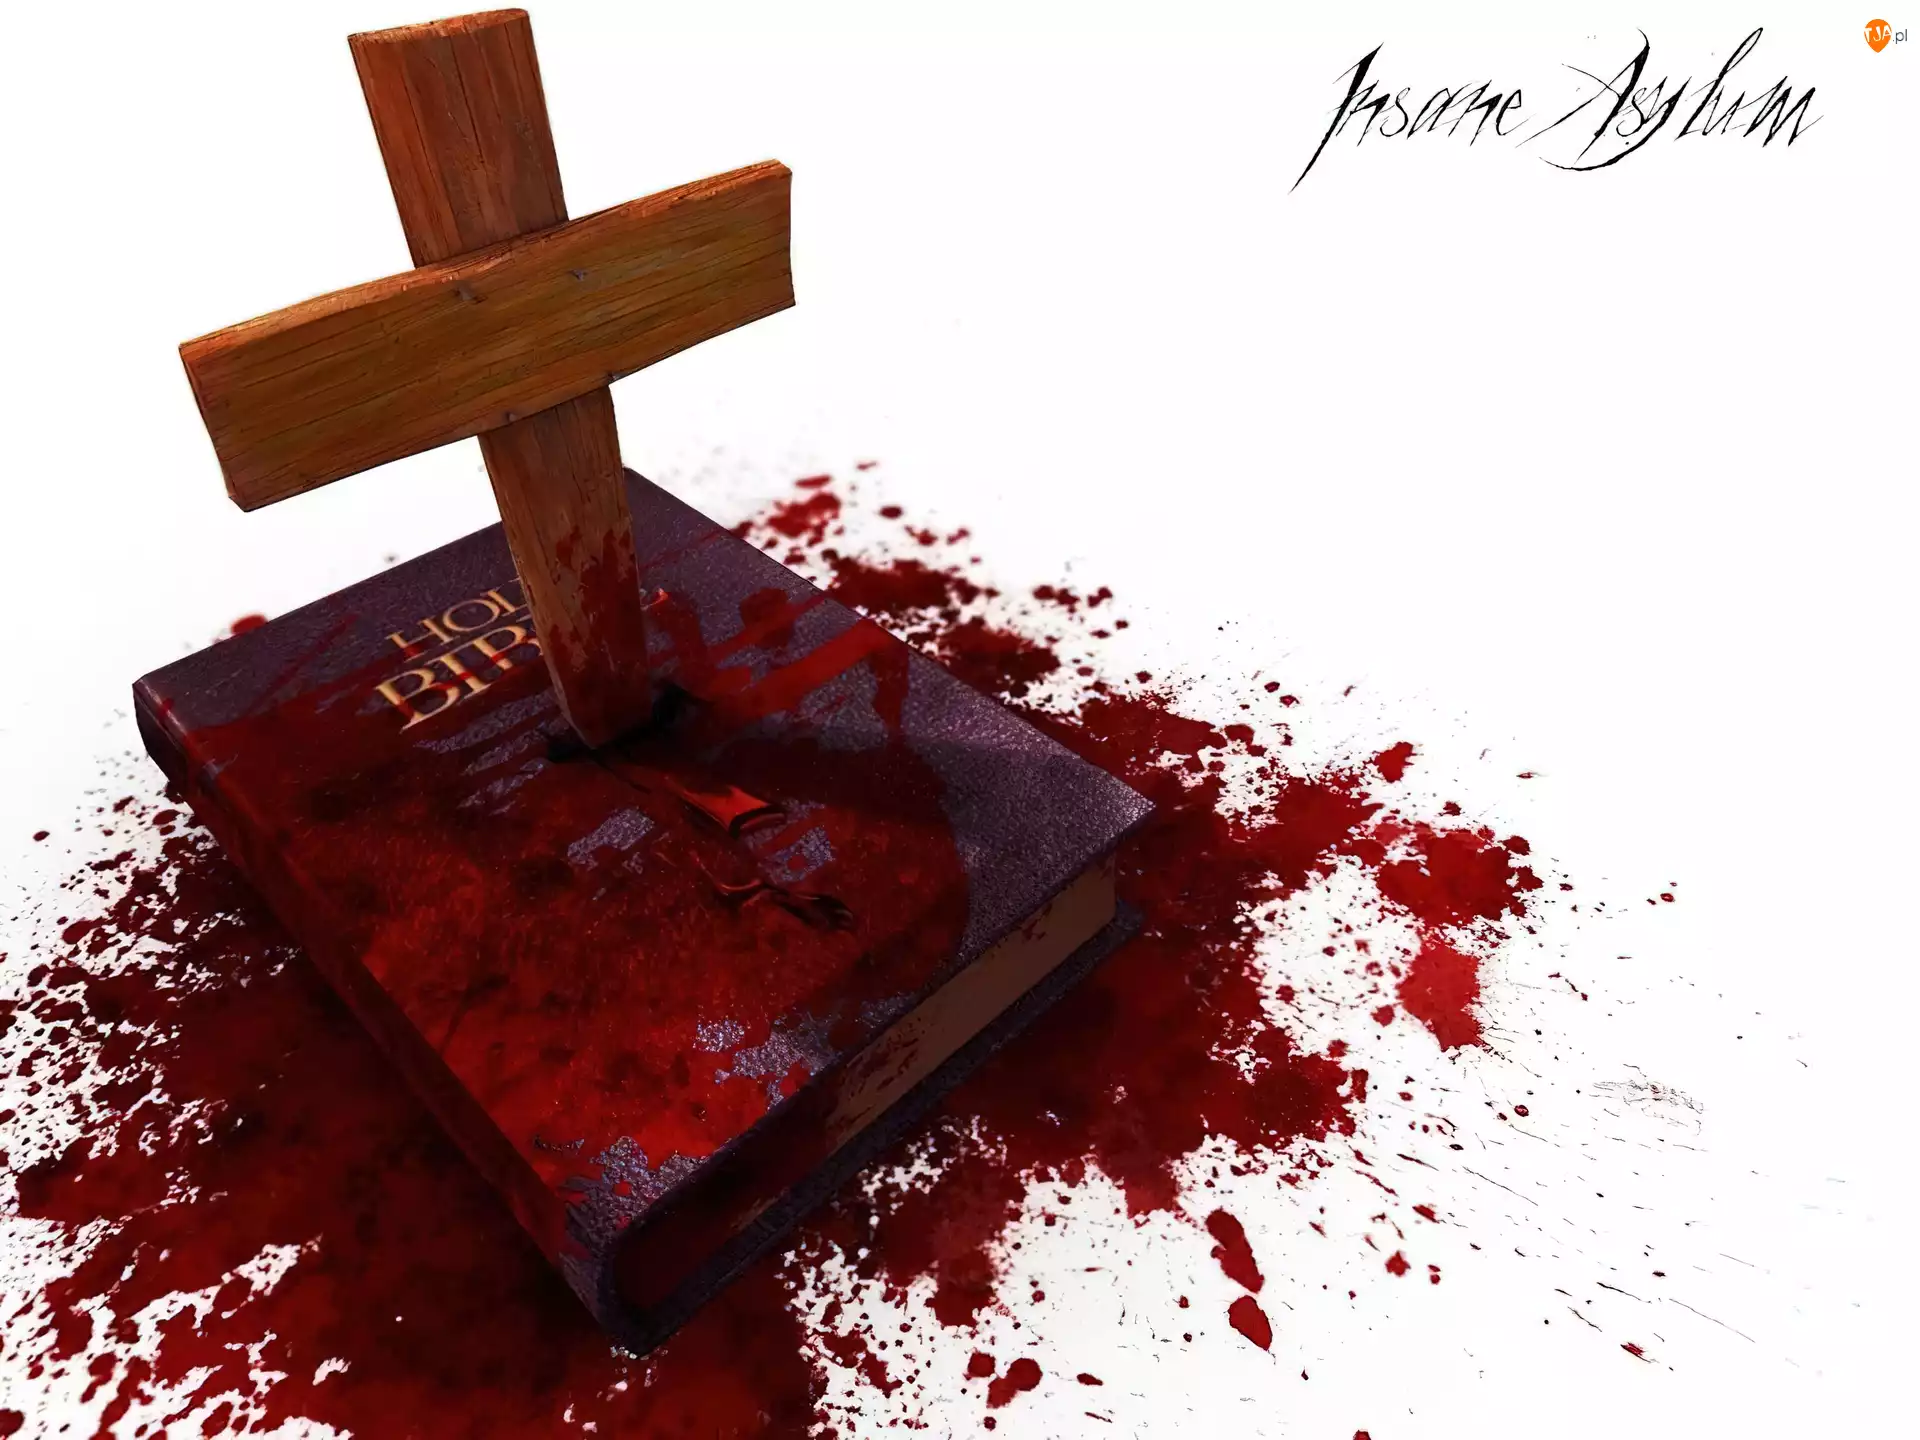 książka, Insane Asylum, krzyż